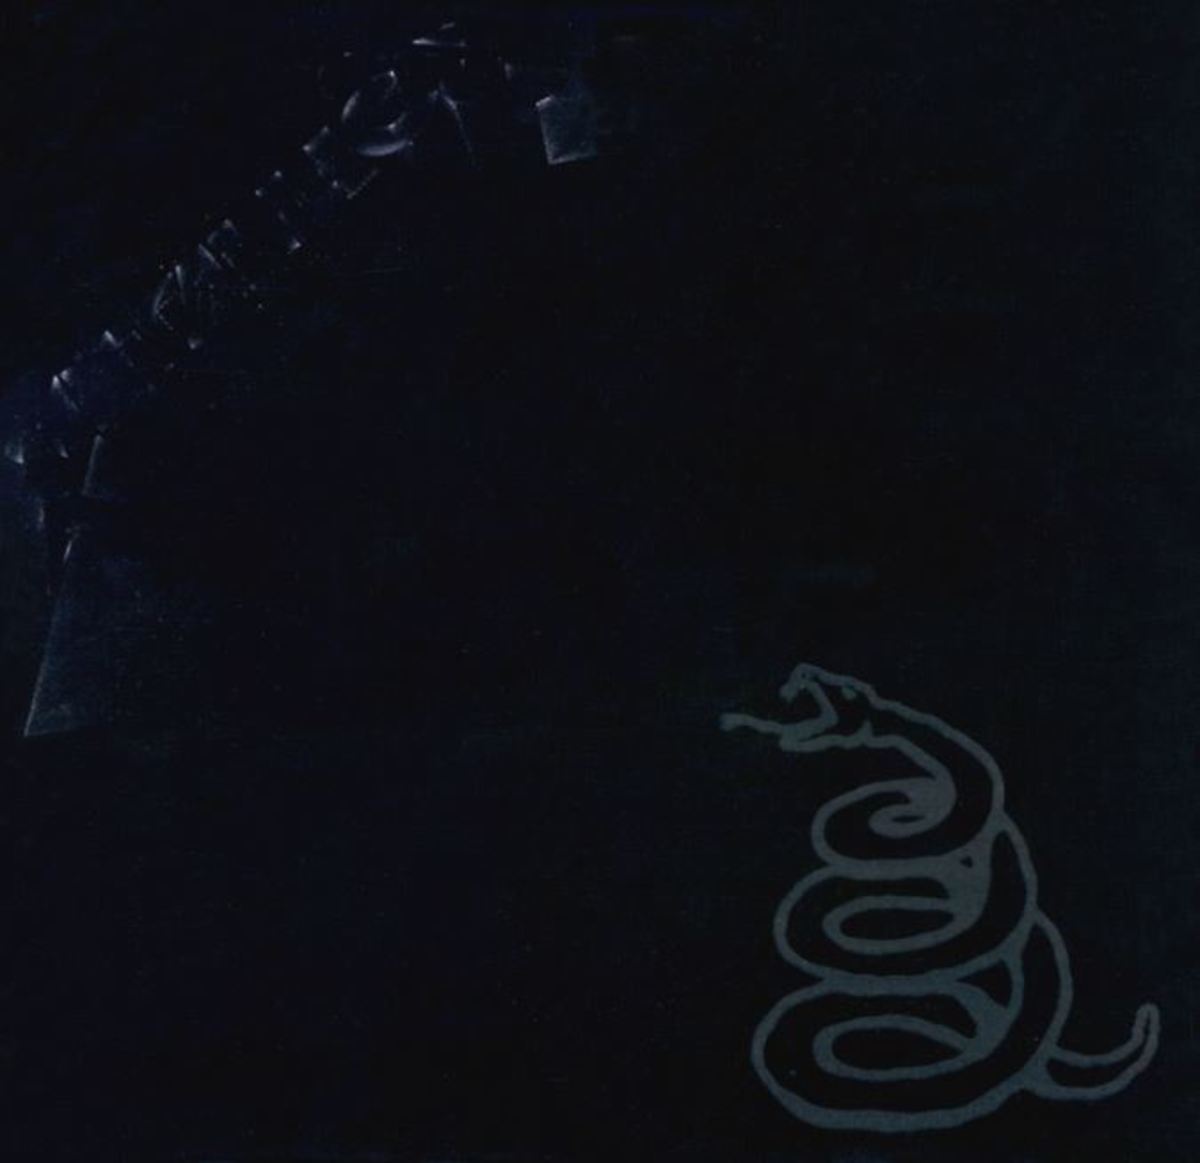 "Metallica" album cover